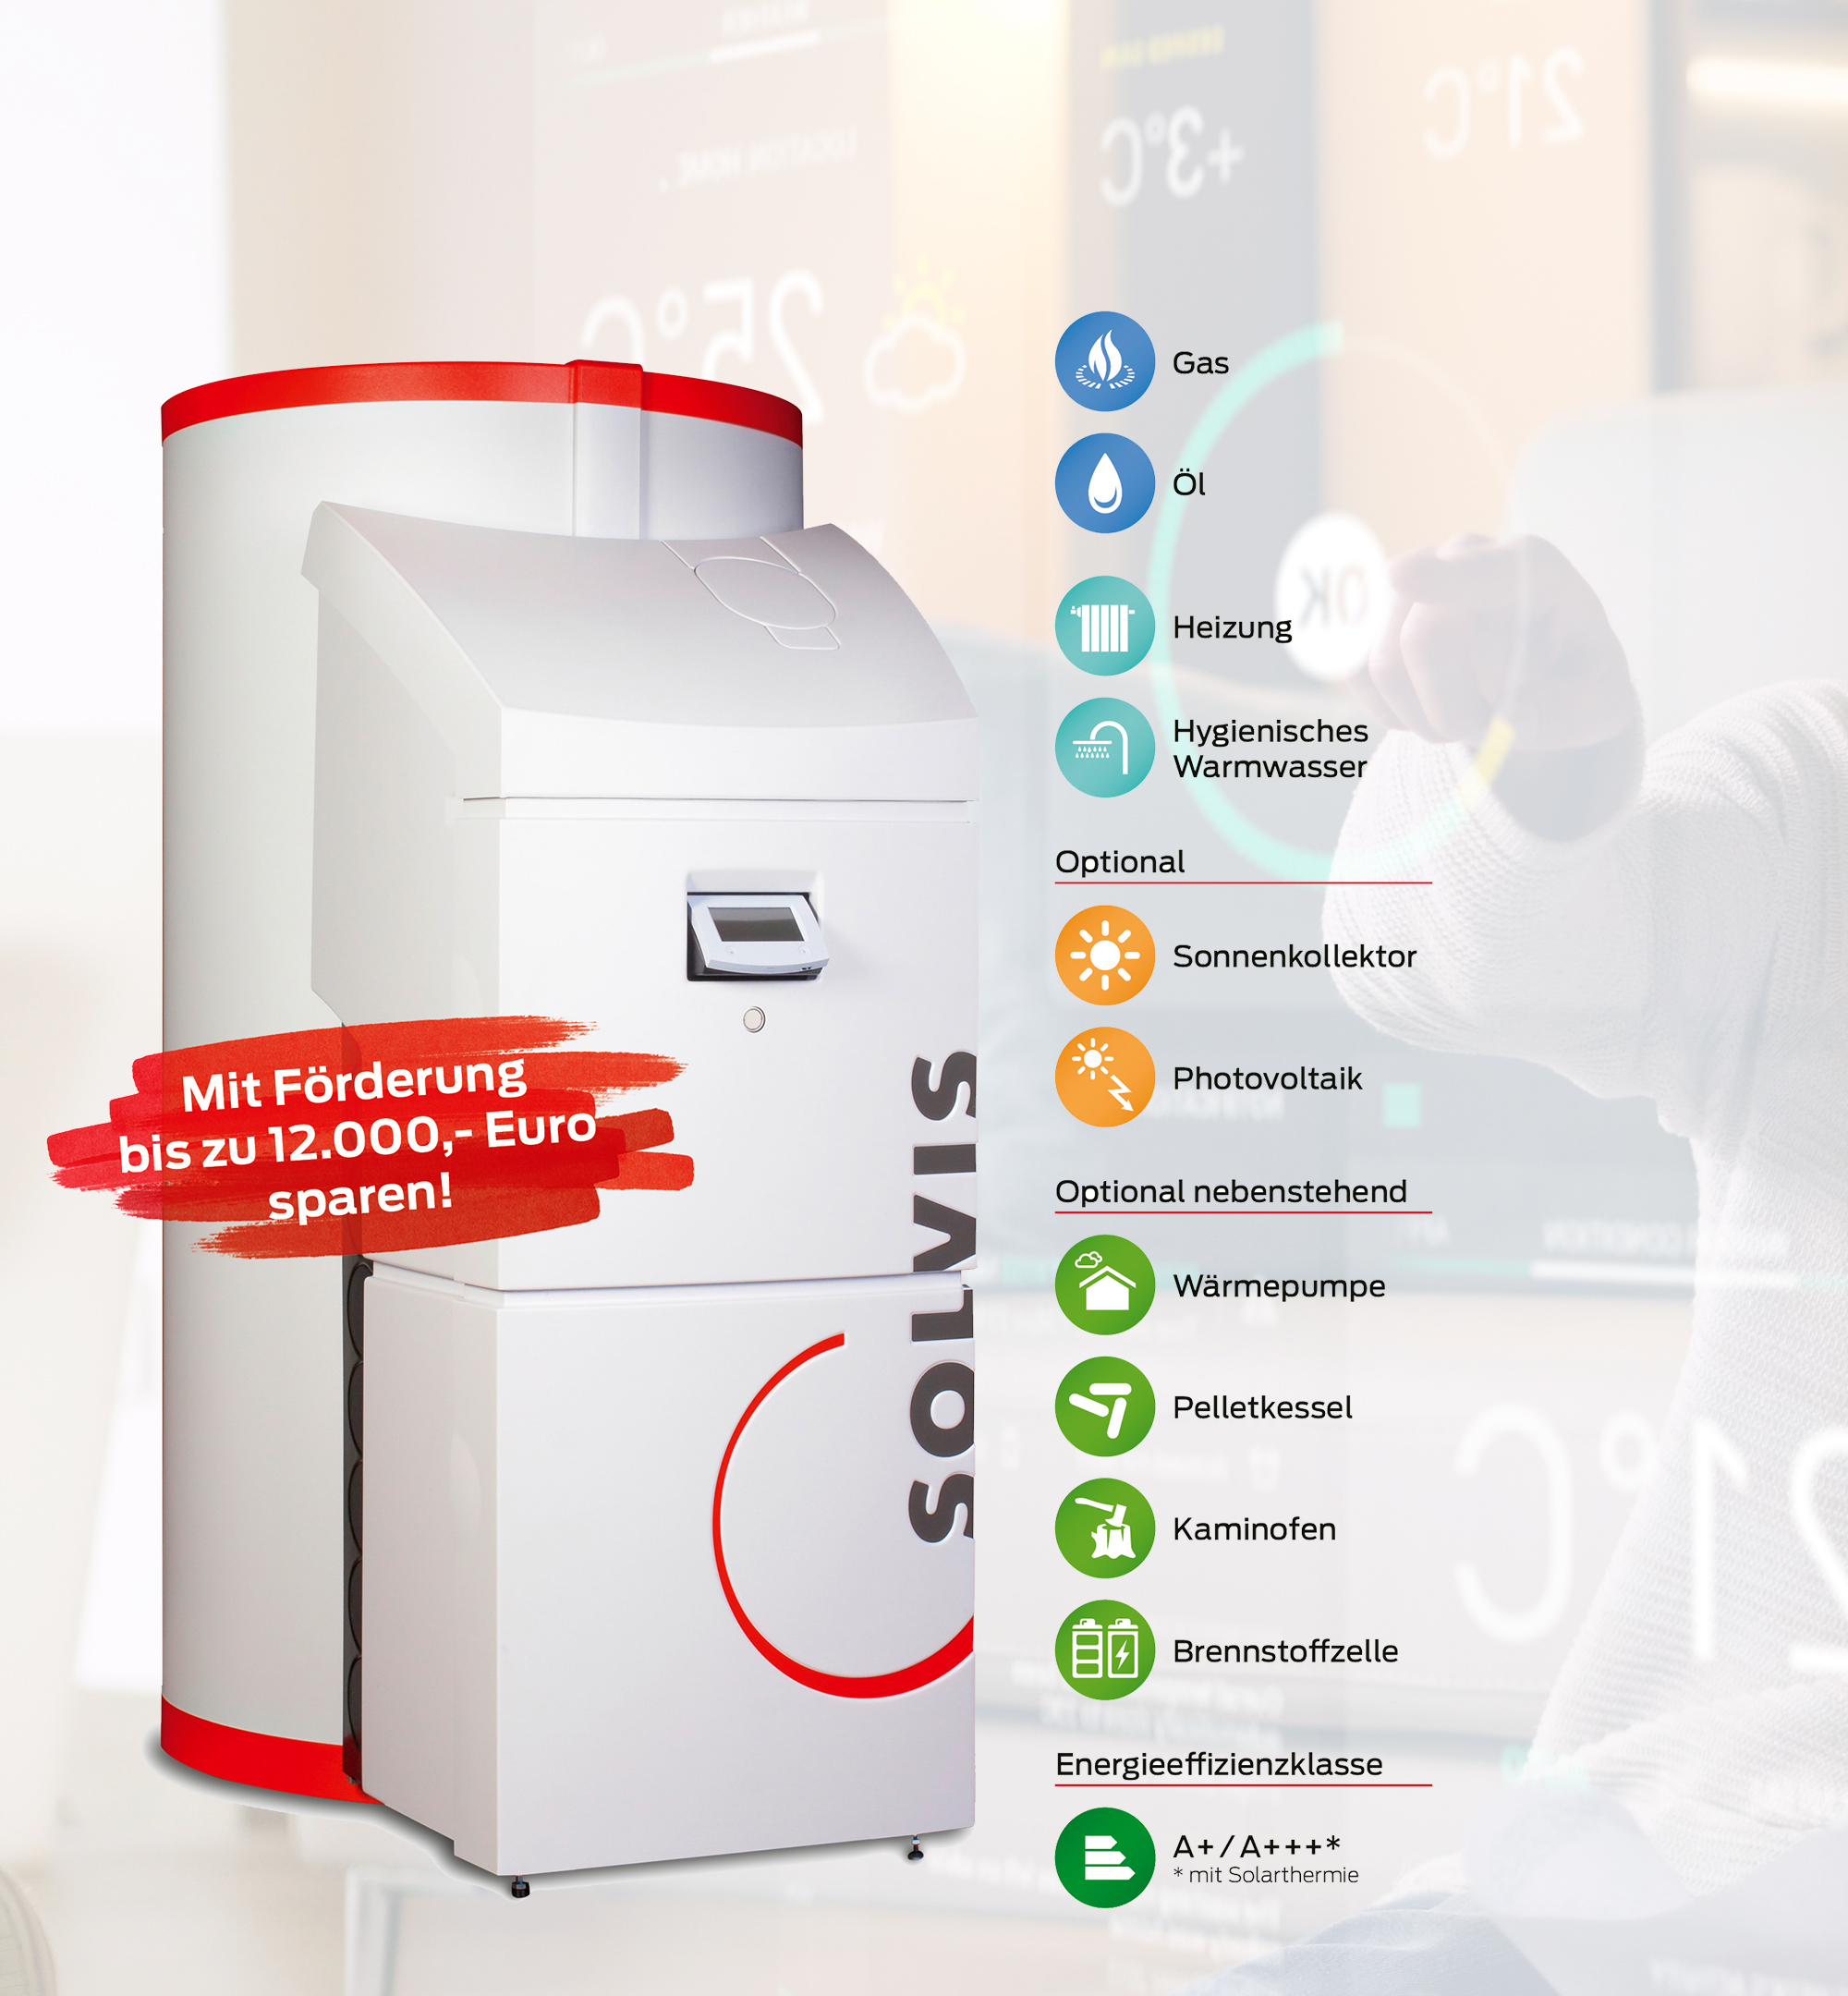 Solvis Max: Hybrid-Brennkessel